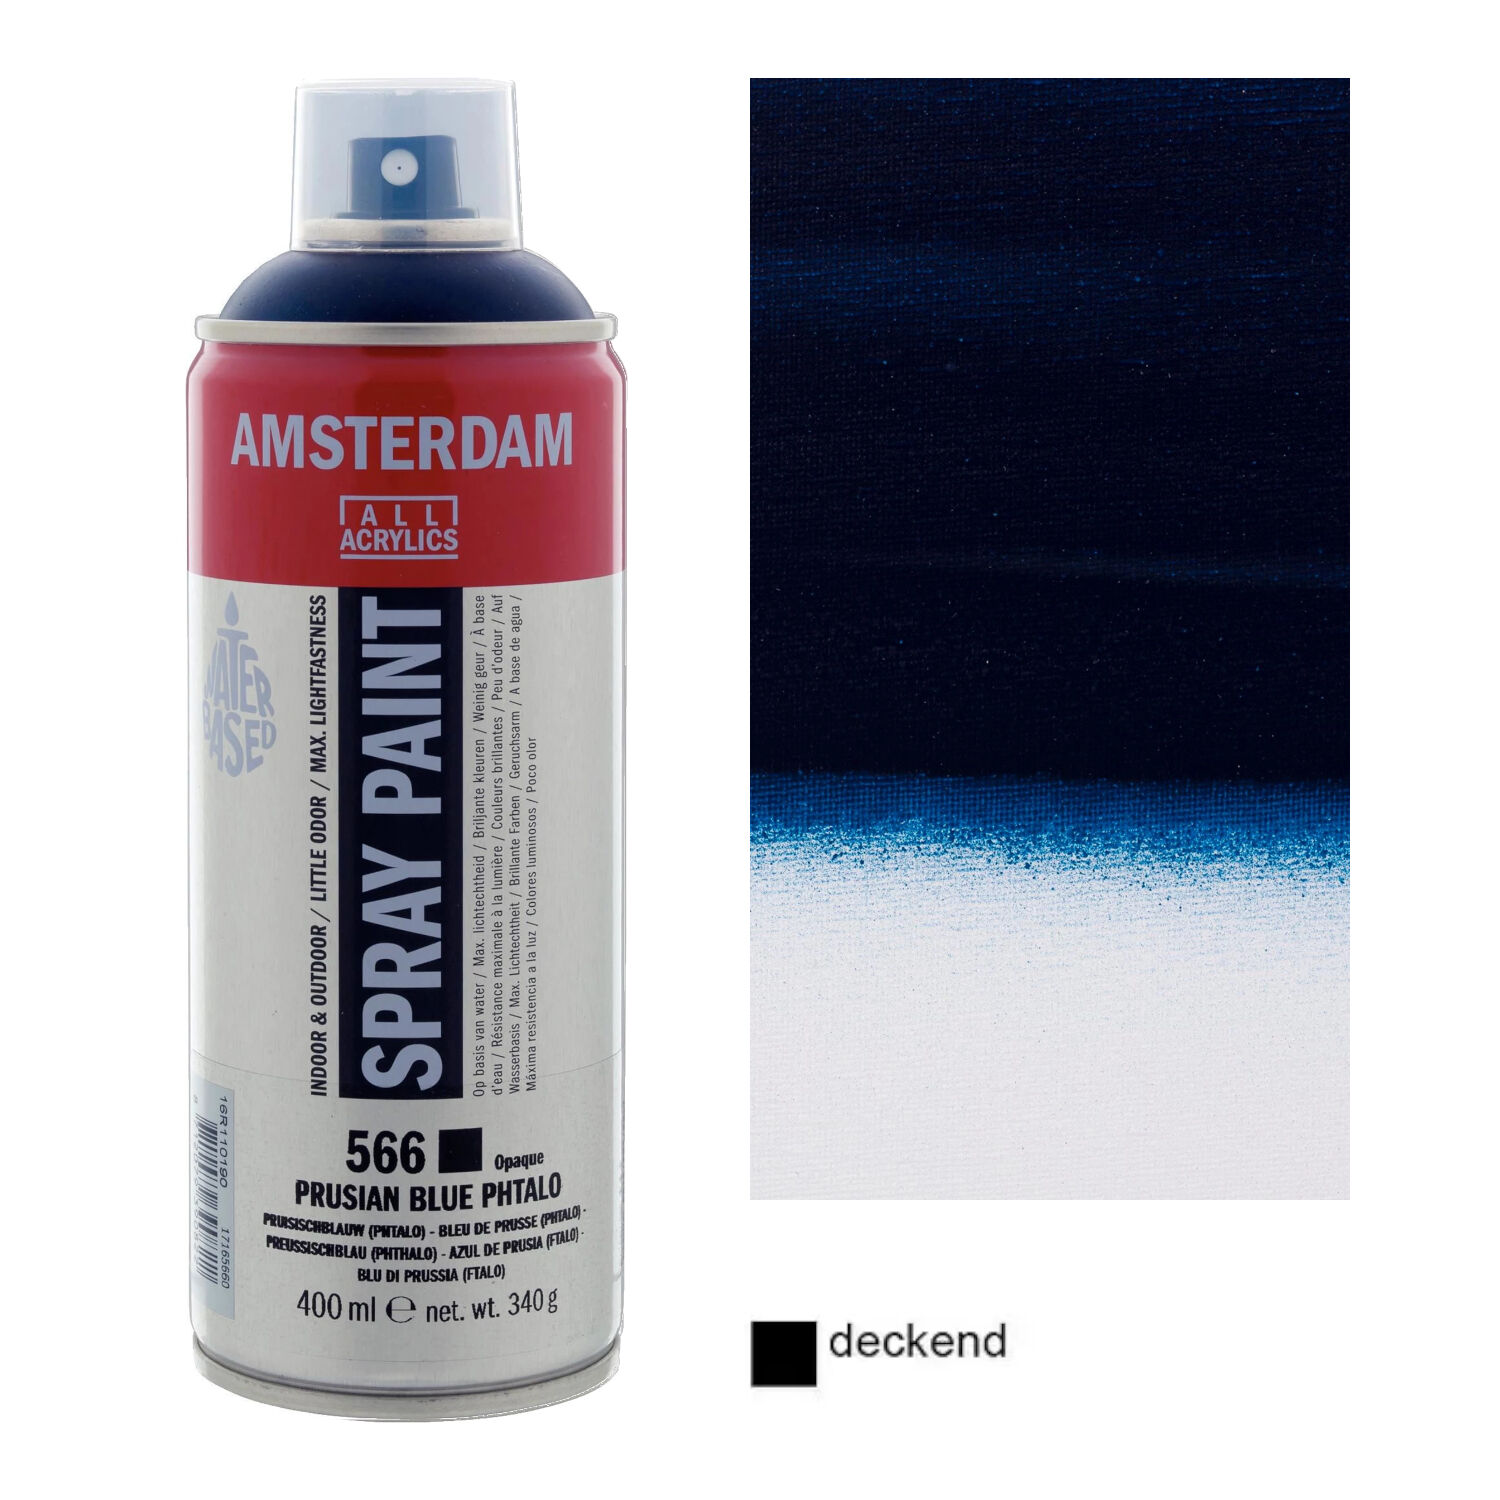 Amsterdam Sprhfarbe 400 ml, Preuischblau Phthalo